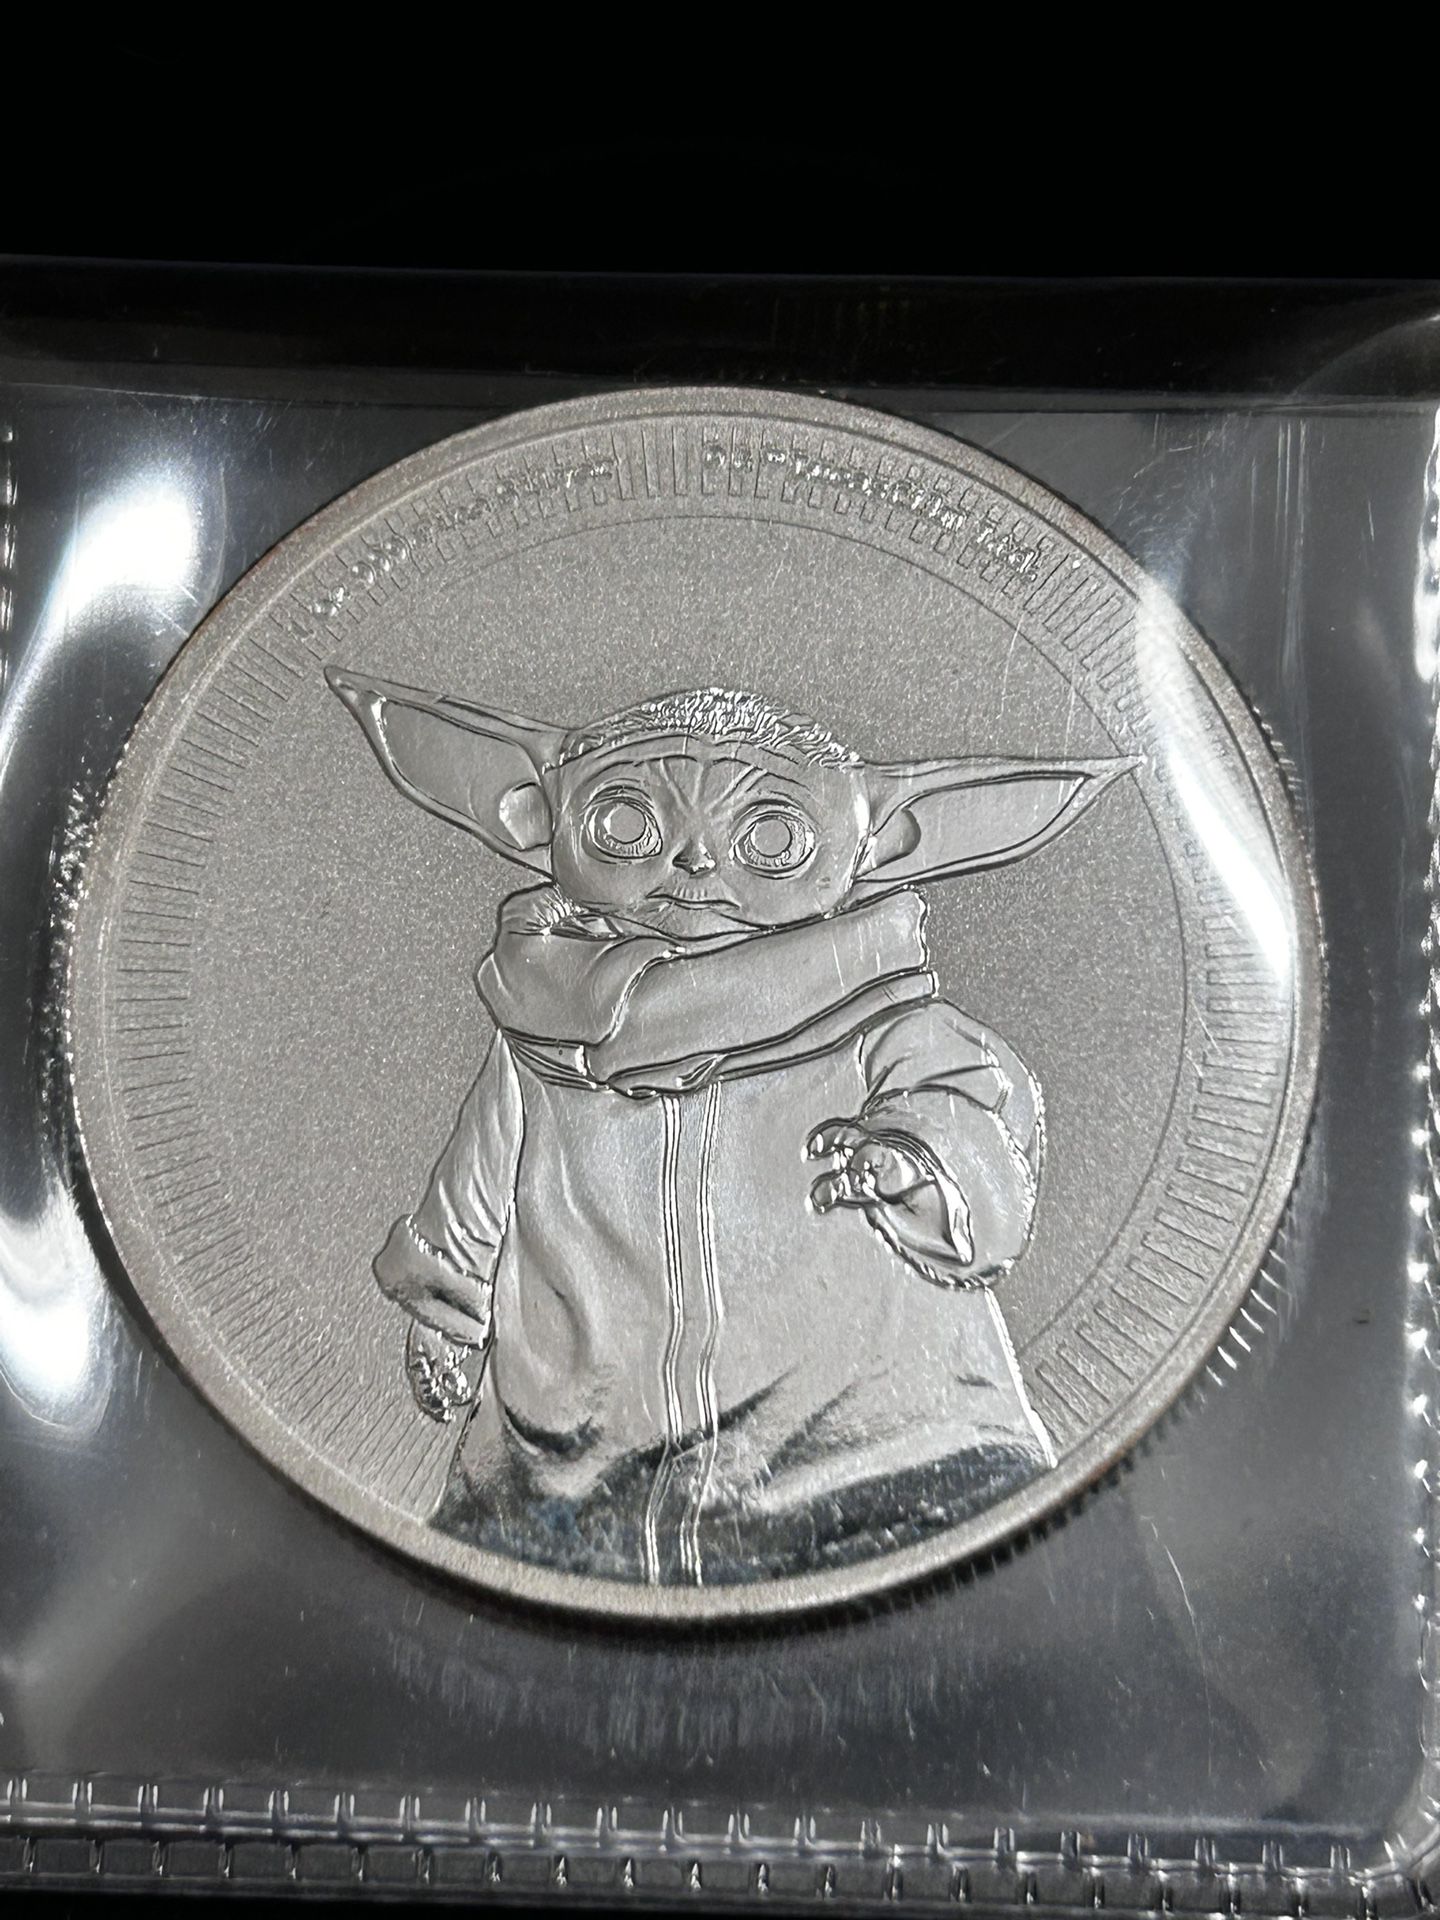 Star Wars: Grogu "Baby Yoda"  1oz Silver Coin